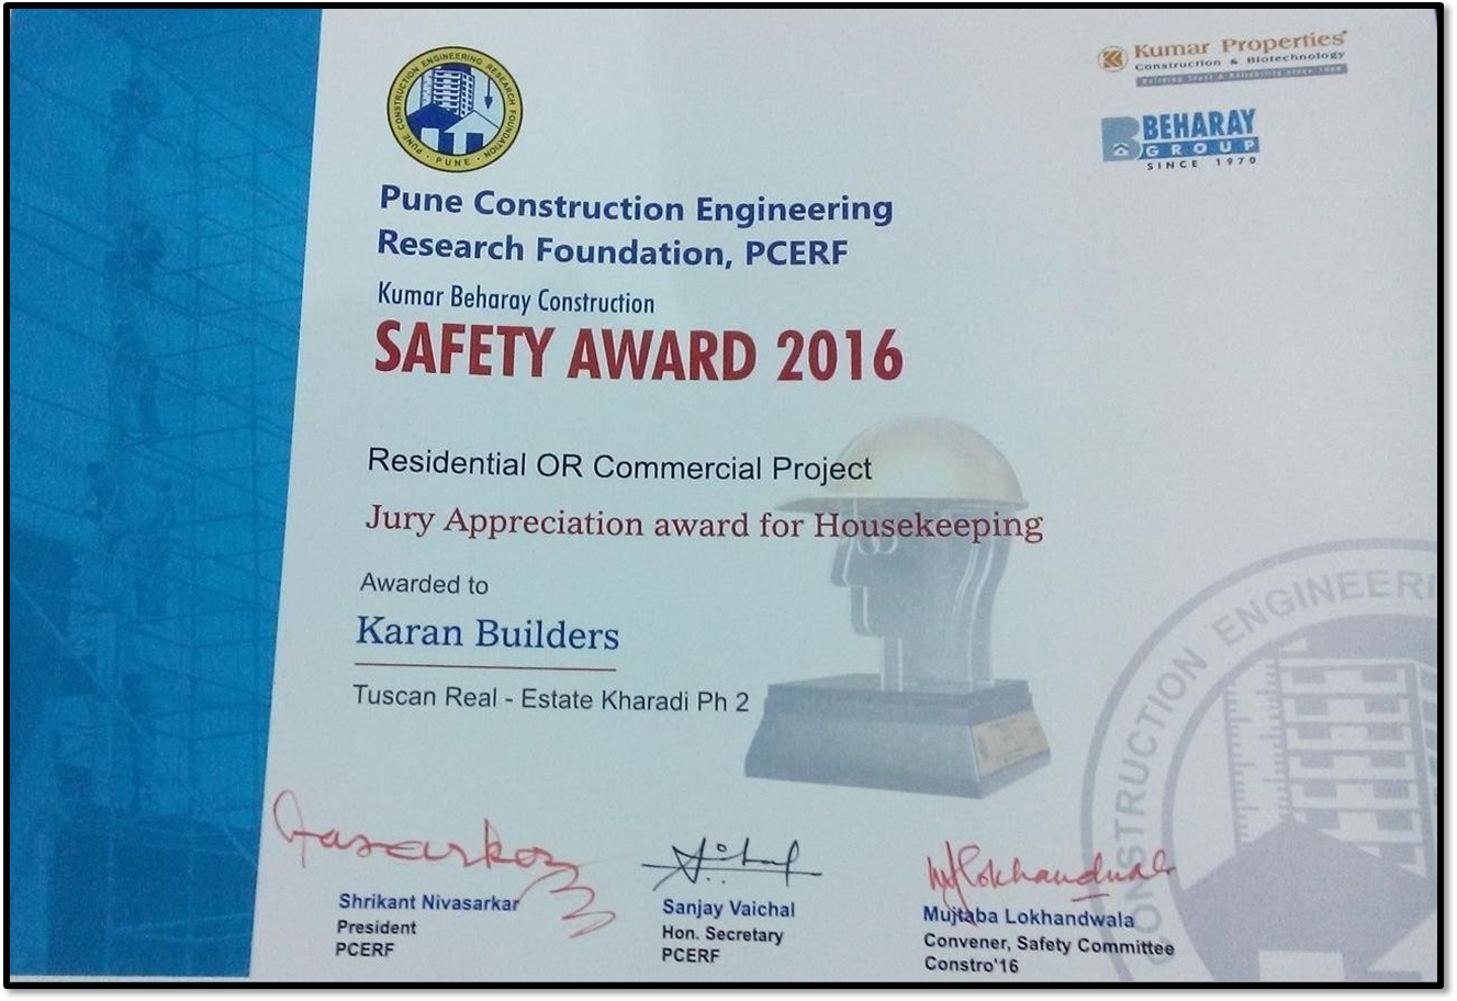 Safety Award 2016